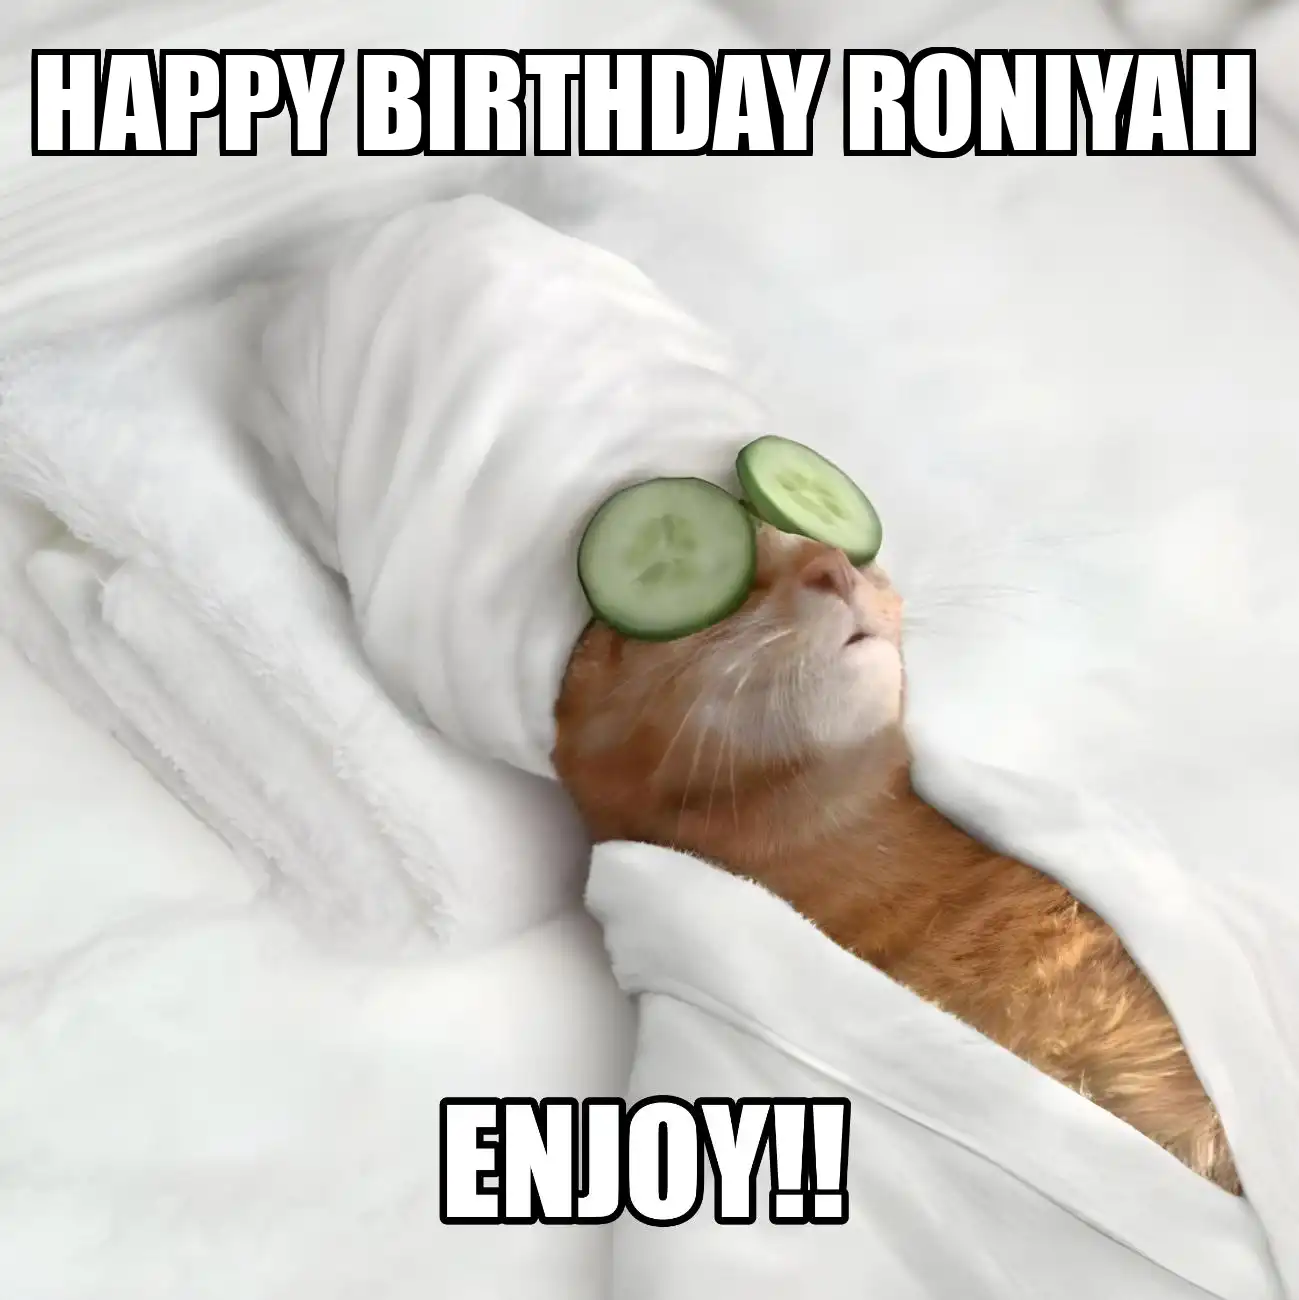 Happy Birthday Roniyah Enjoy Cat Meme